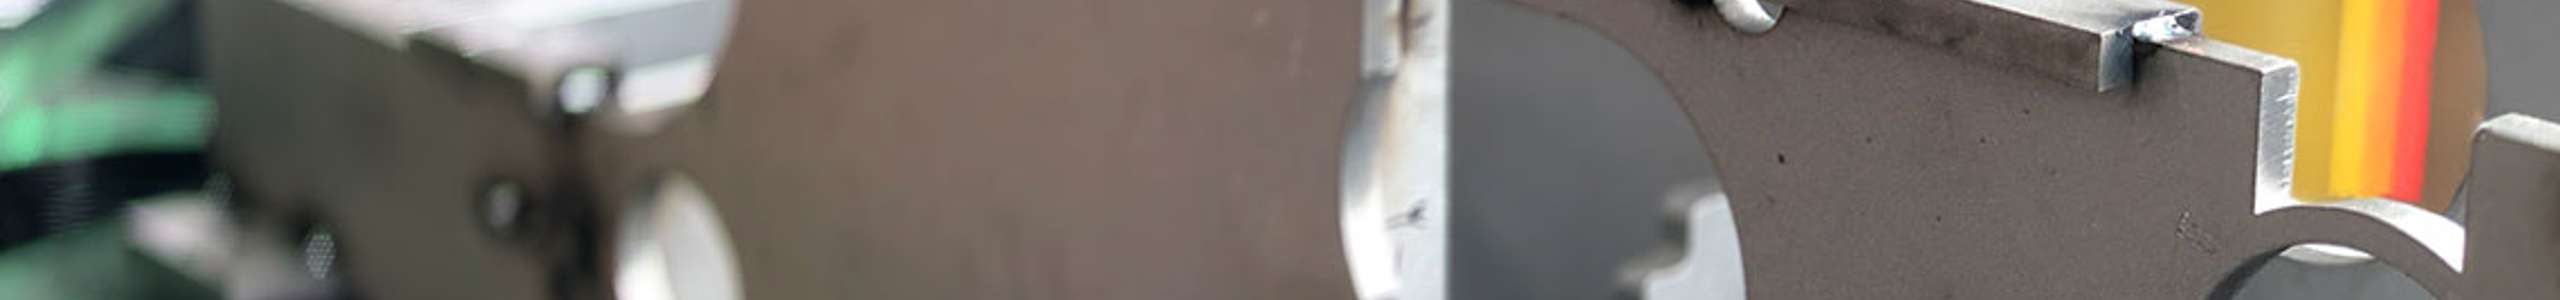 Close-up eines Metallteils mit kreisförmigen Löchern